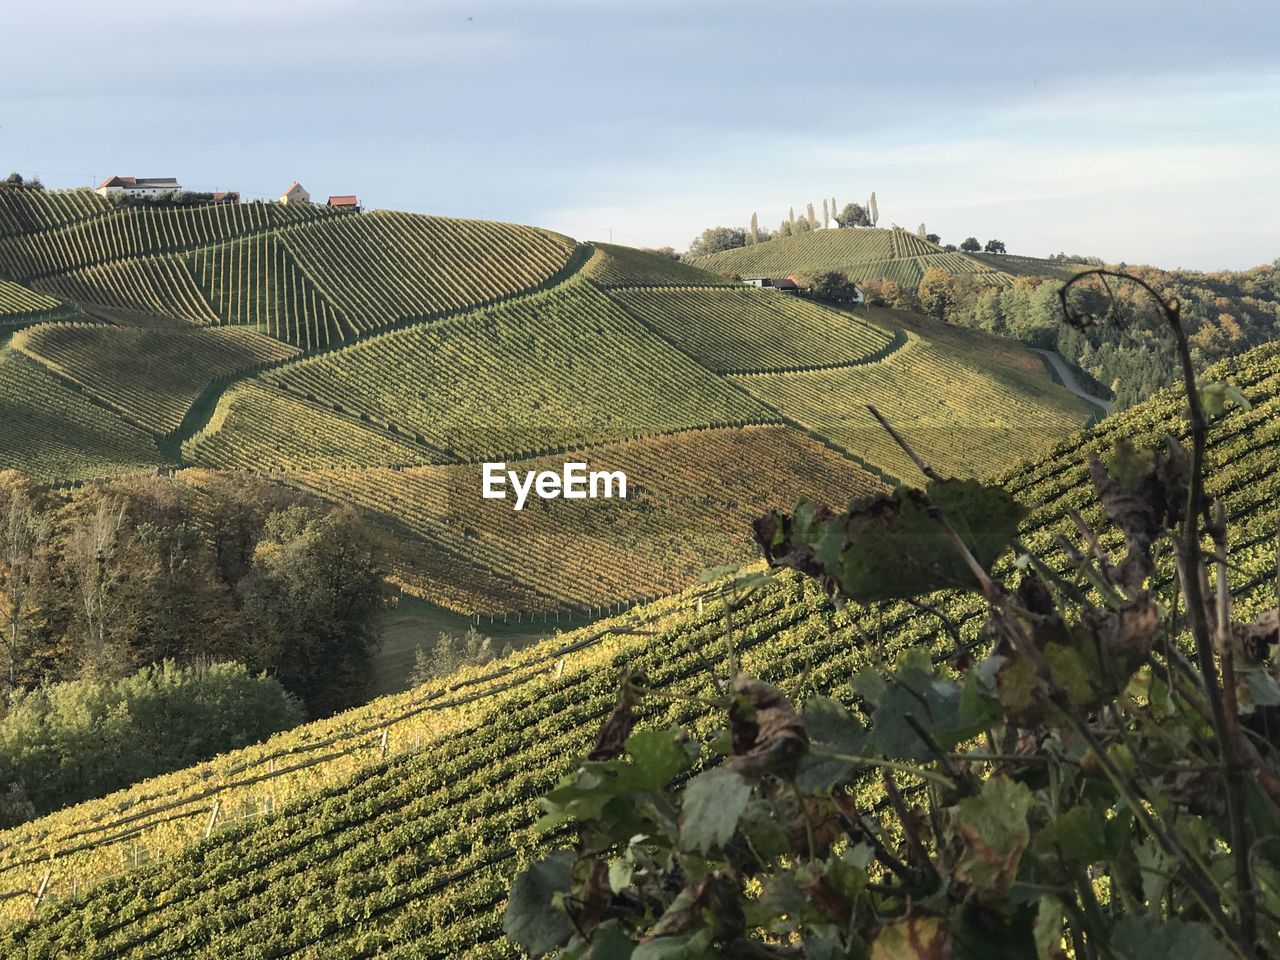 View of vineyard against sky in austrian südsteiermark steirische weinstrasse